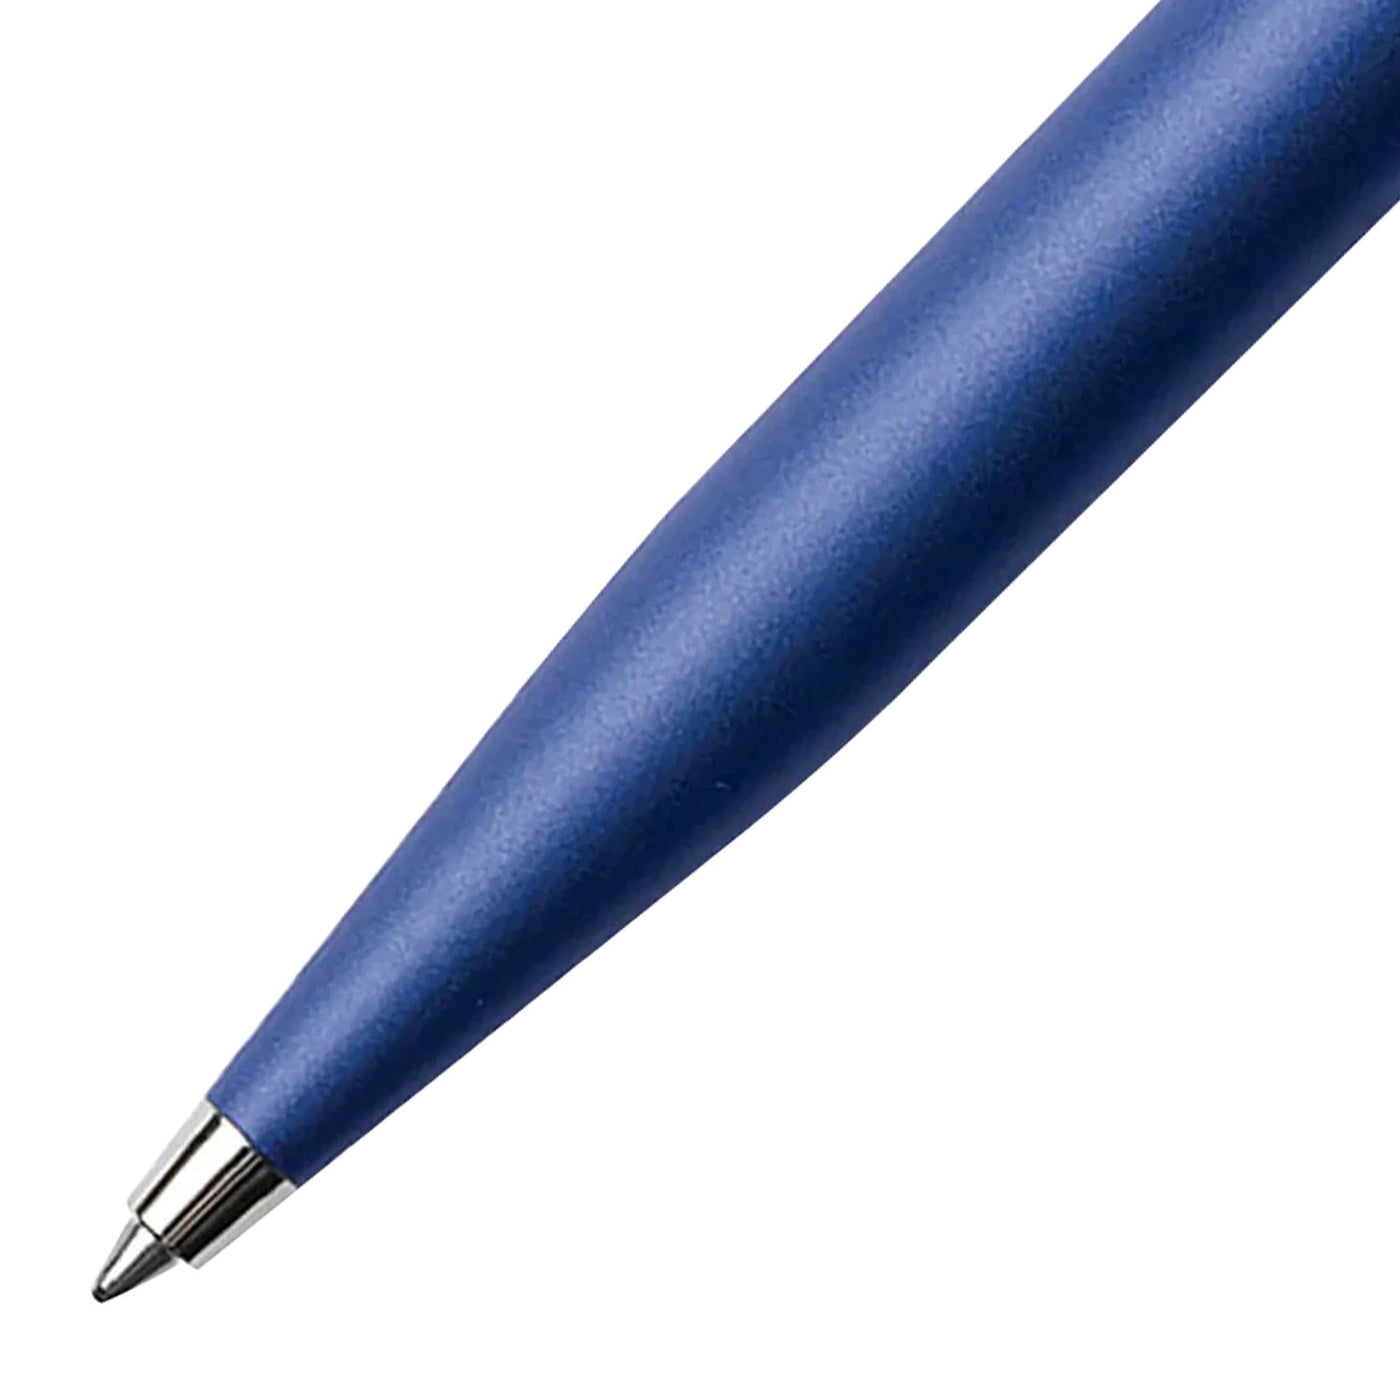 Sheaffer Gift Set - VFM Neon Blue Ball Pen with A6 Black Notebook